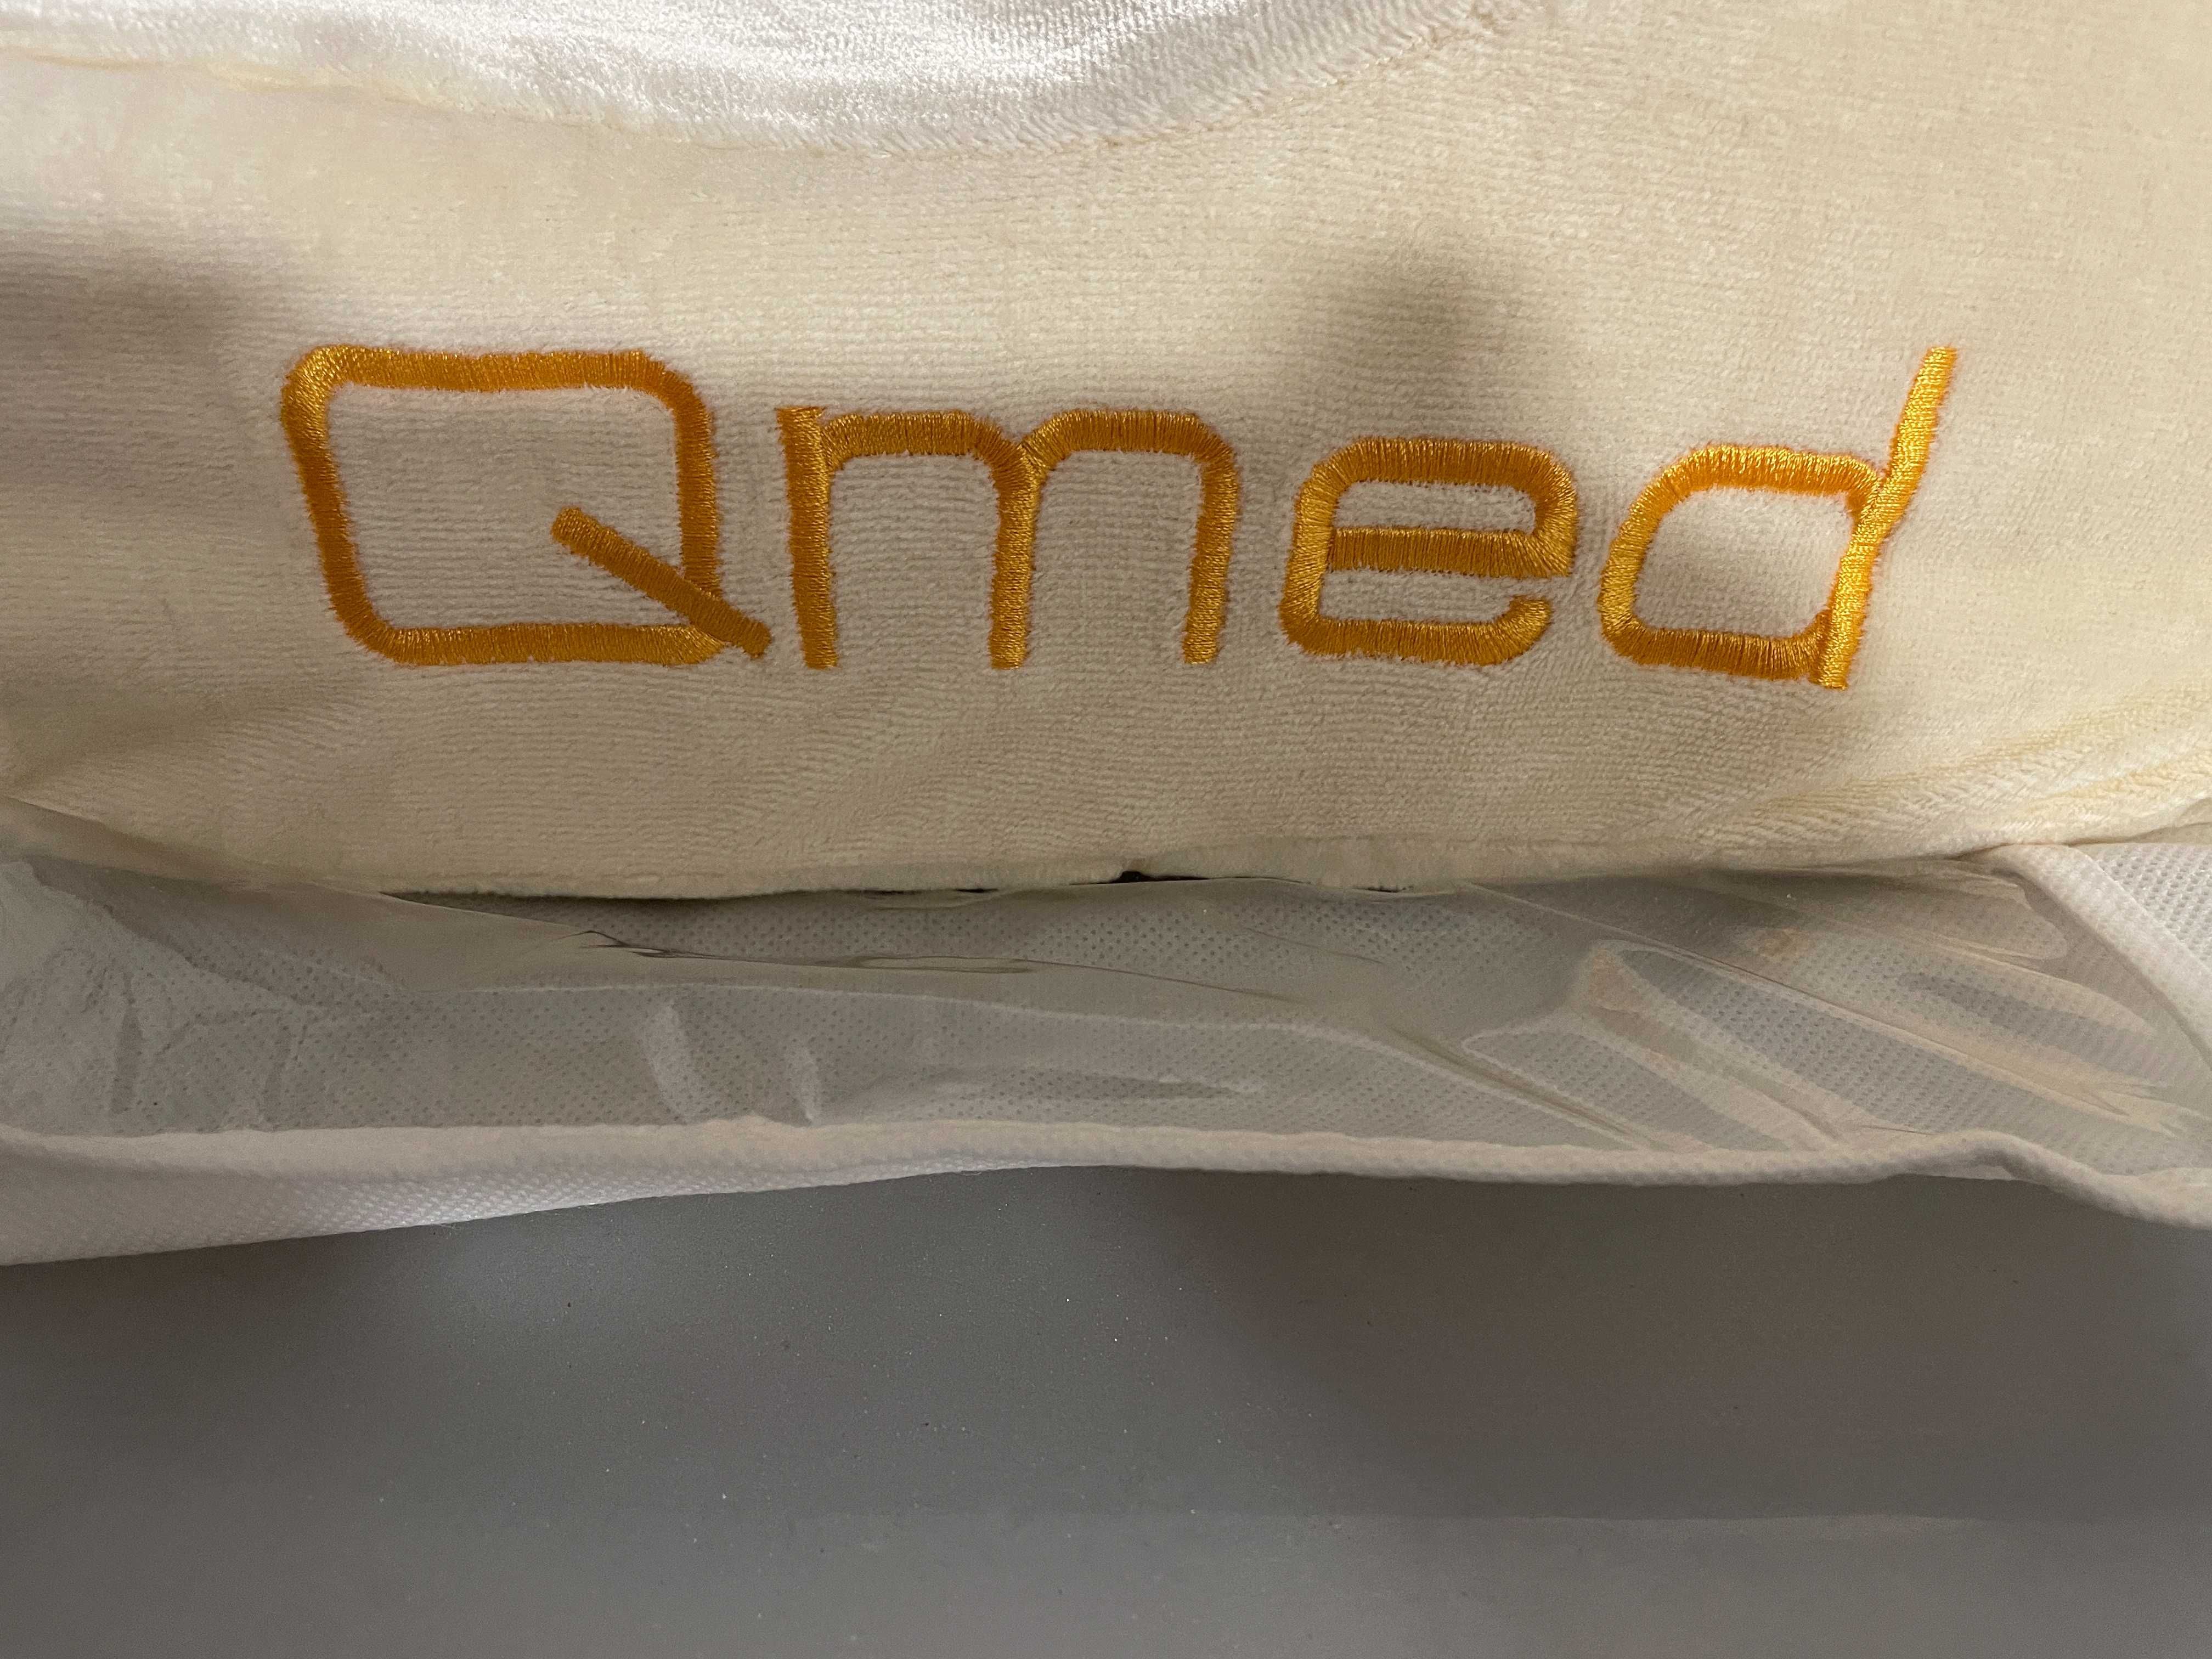 Poduszka profilowana ortpedyczna do snu standard Qmed